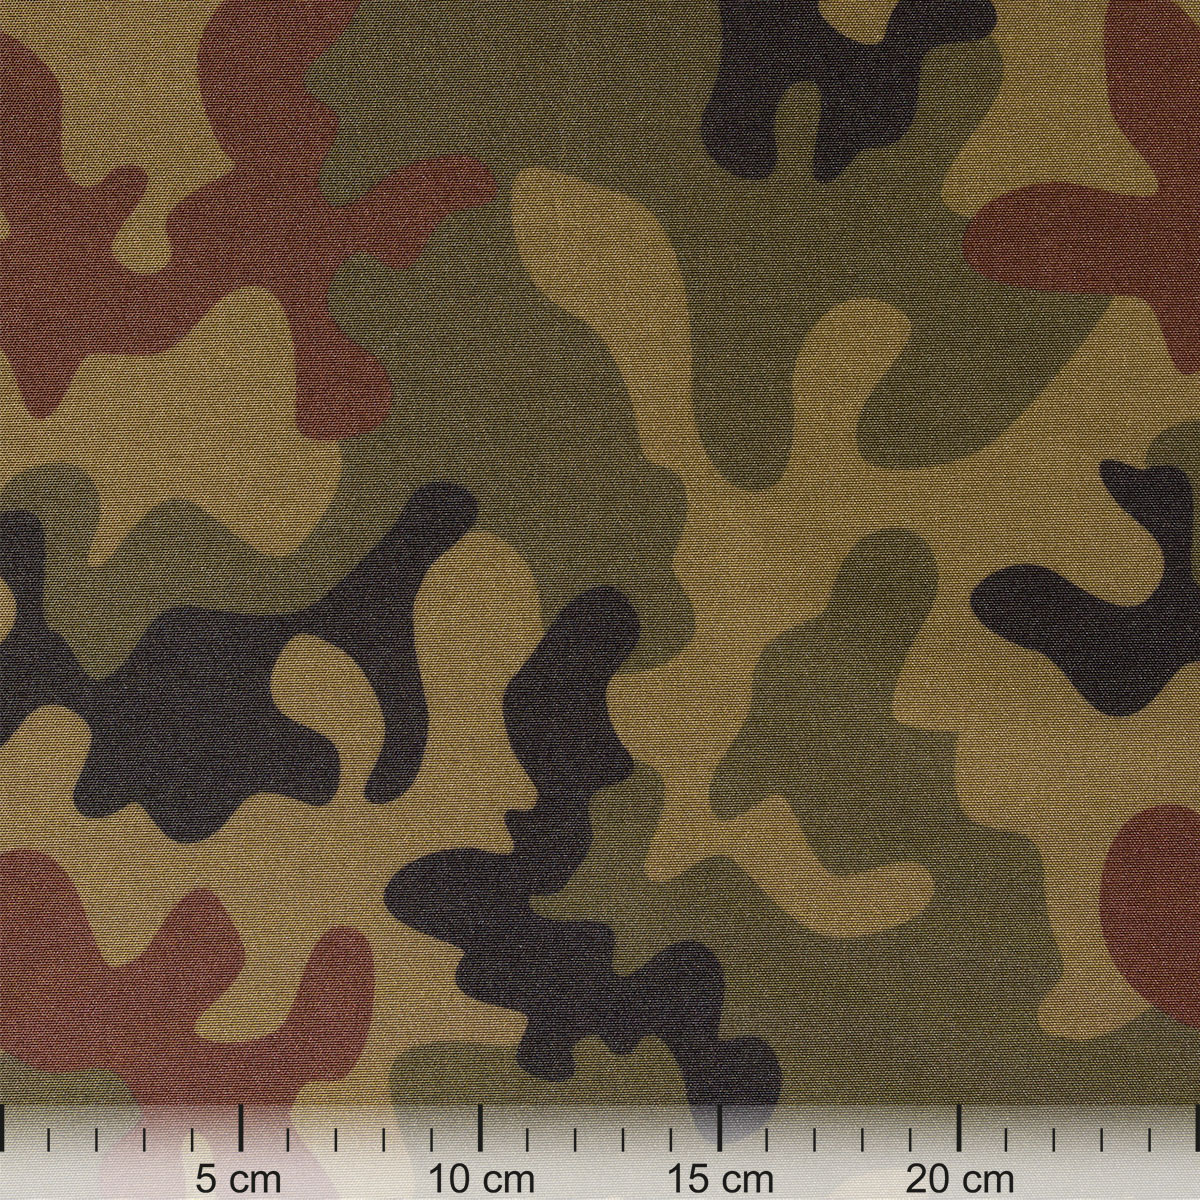 Outdoor-Stoff Camouflage-dunkel in 1,6m Breite (METERWARE) Markisenstoff aus 100% Polyester